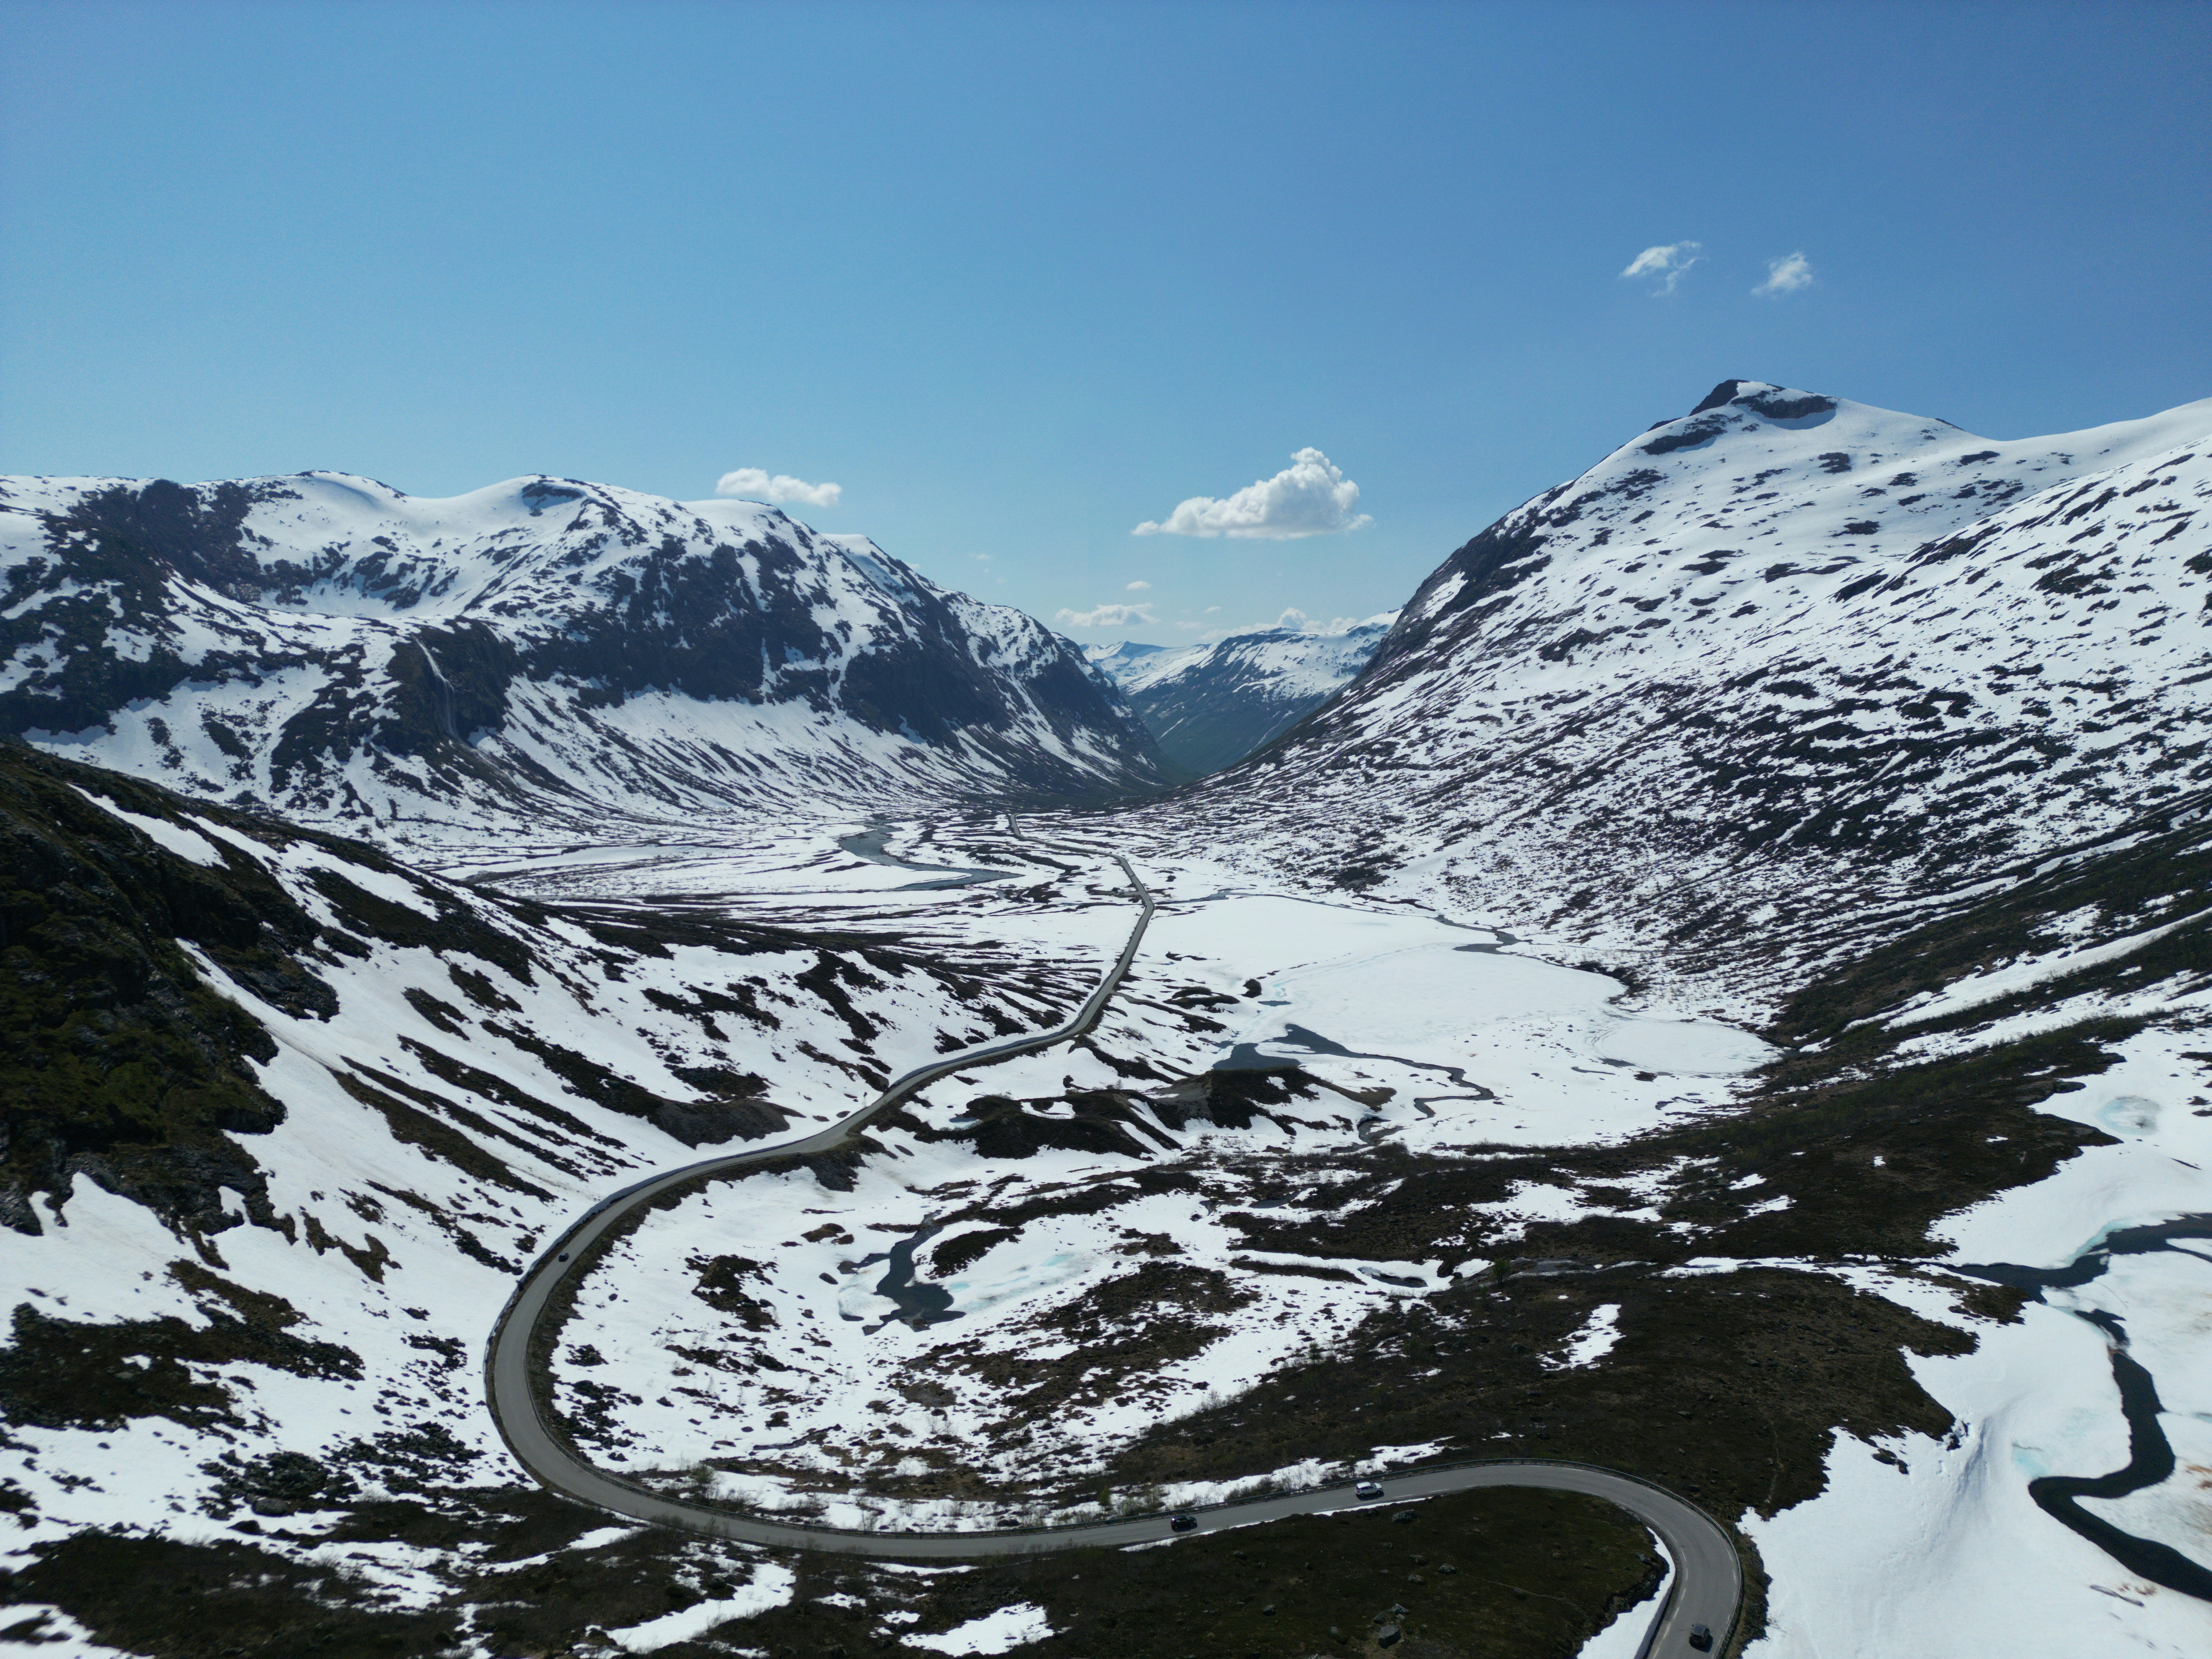 découvrez la norvège lors d'un road trip inoubliable à travers ses paysages spectaculaires et ses fjords majestueux. réservez dès maintenant votre aventure norvégienne !